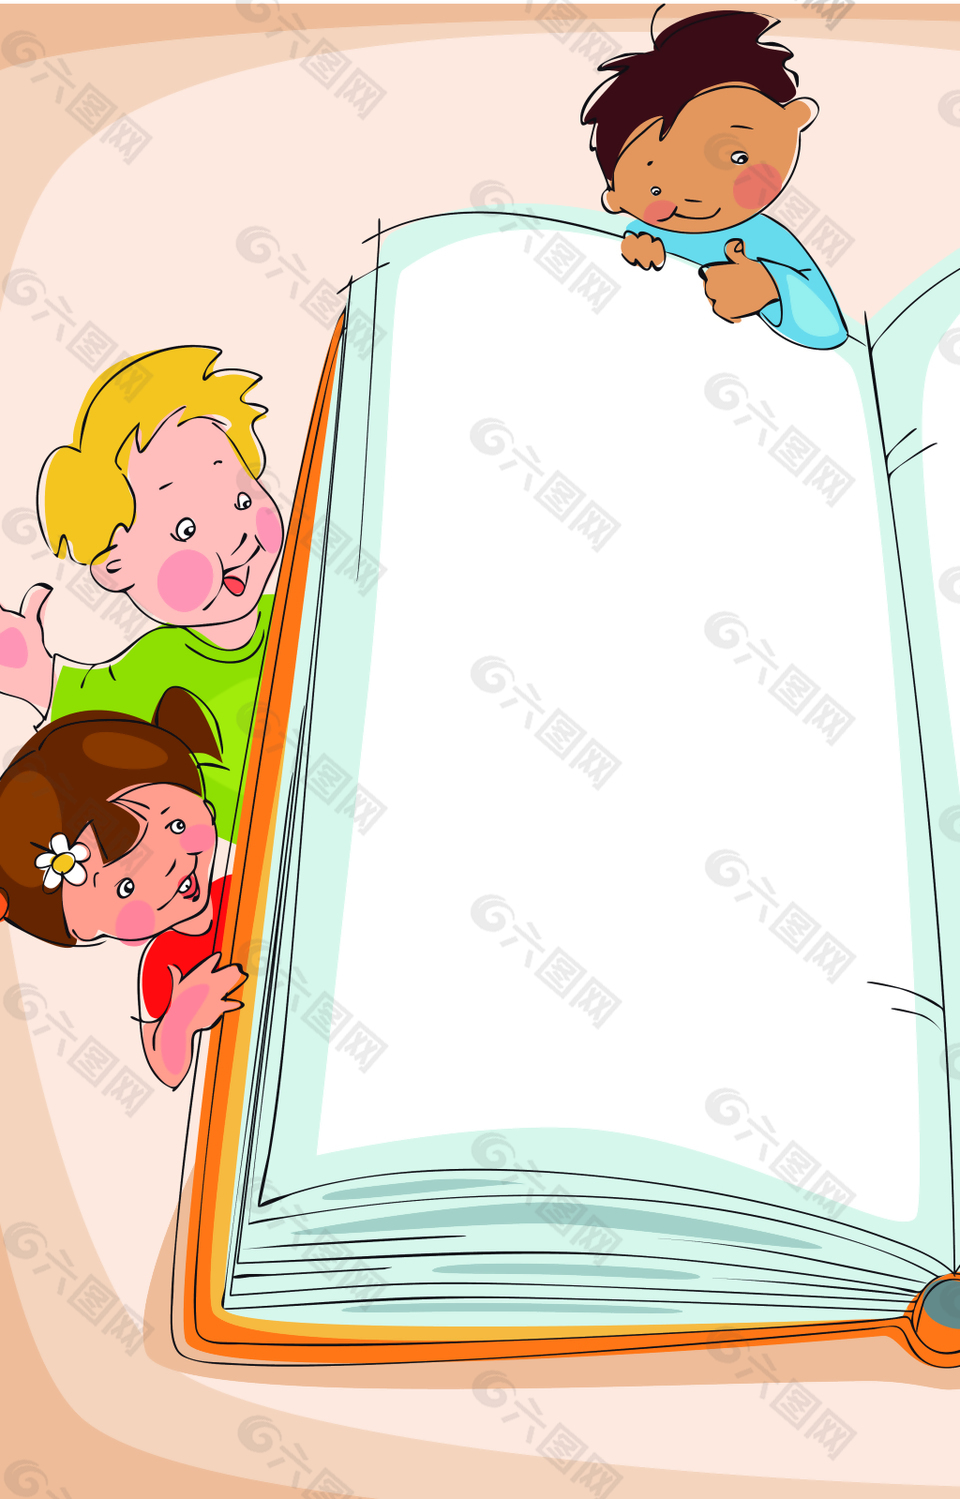 书本边上的小朋友背景素材